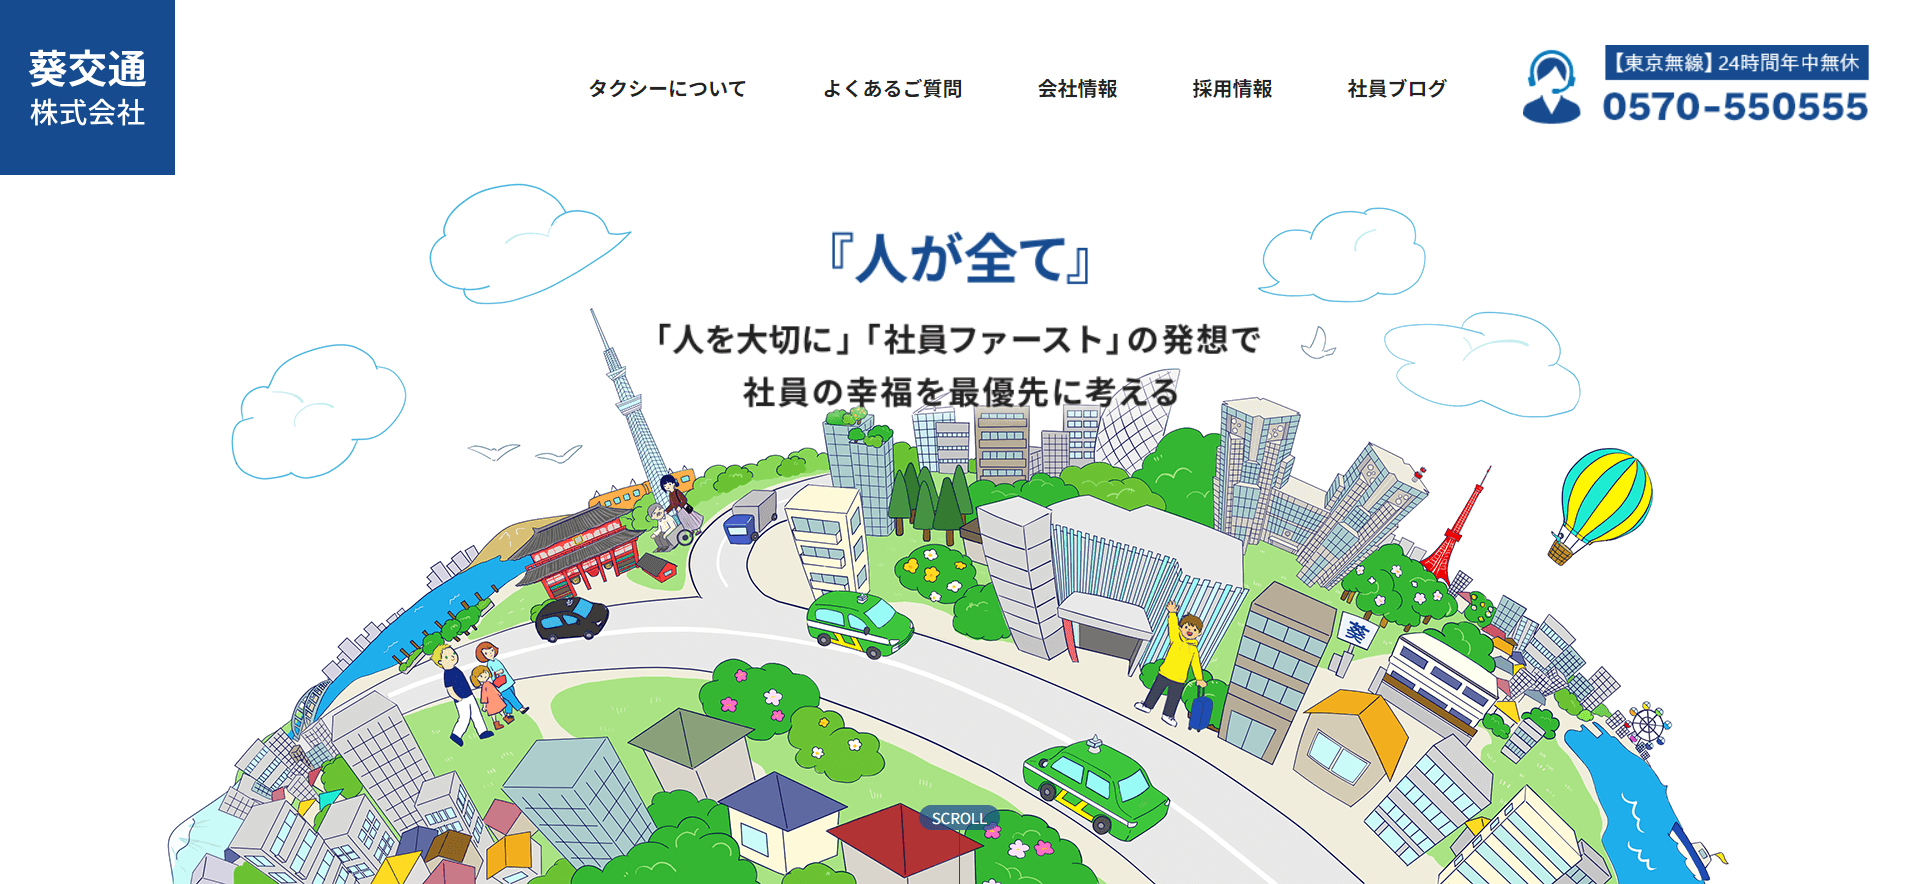 葵交通株式会社のメイン画像